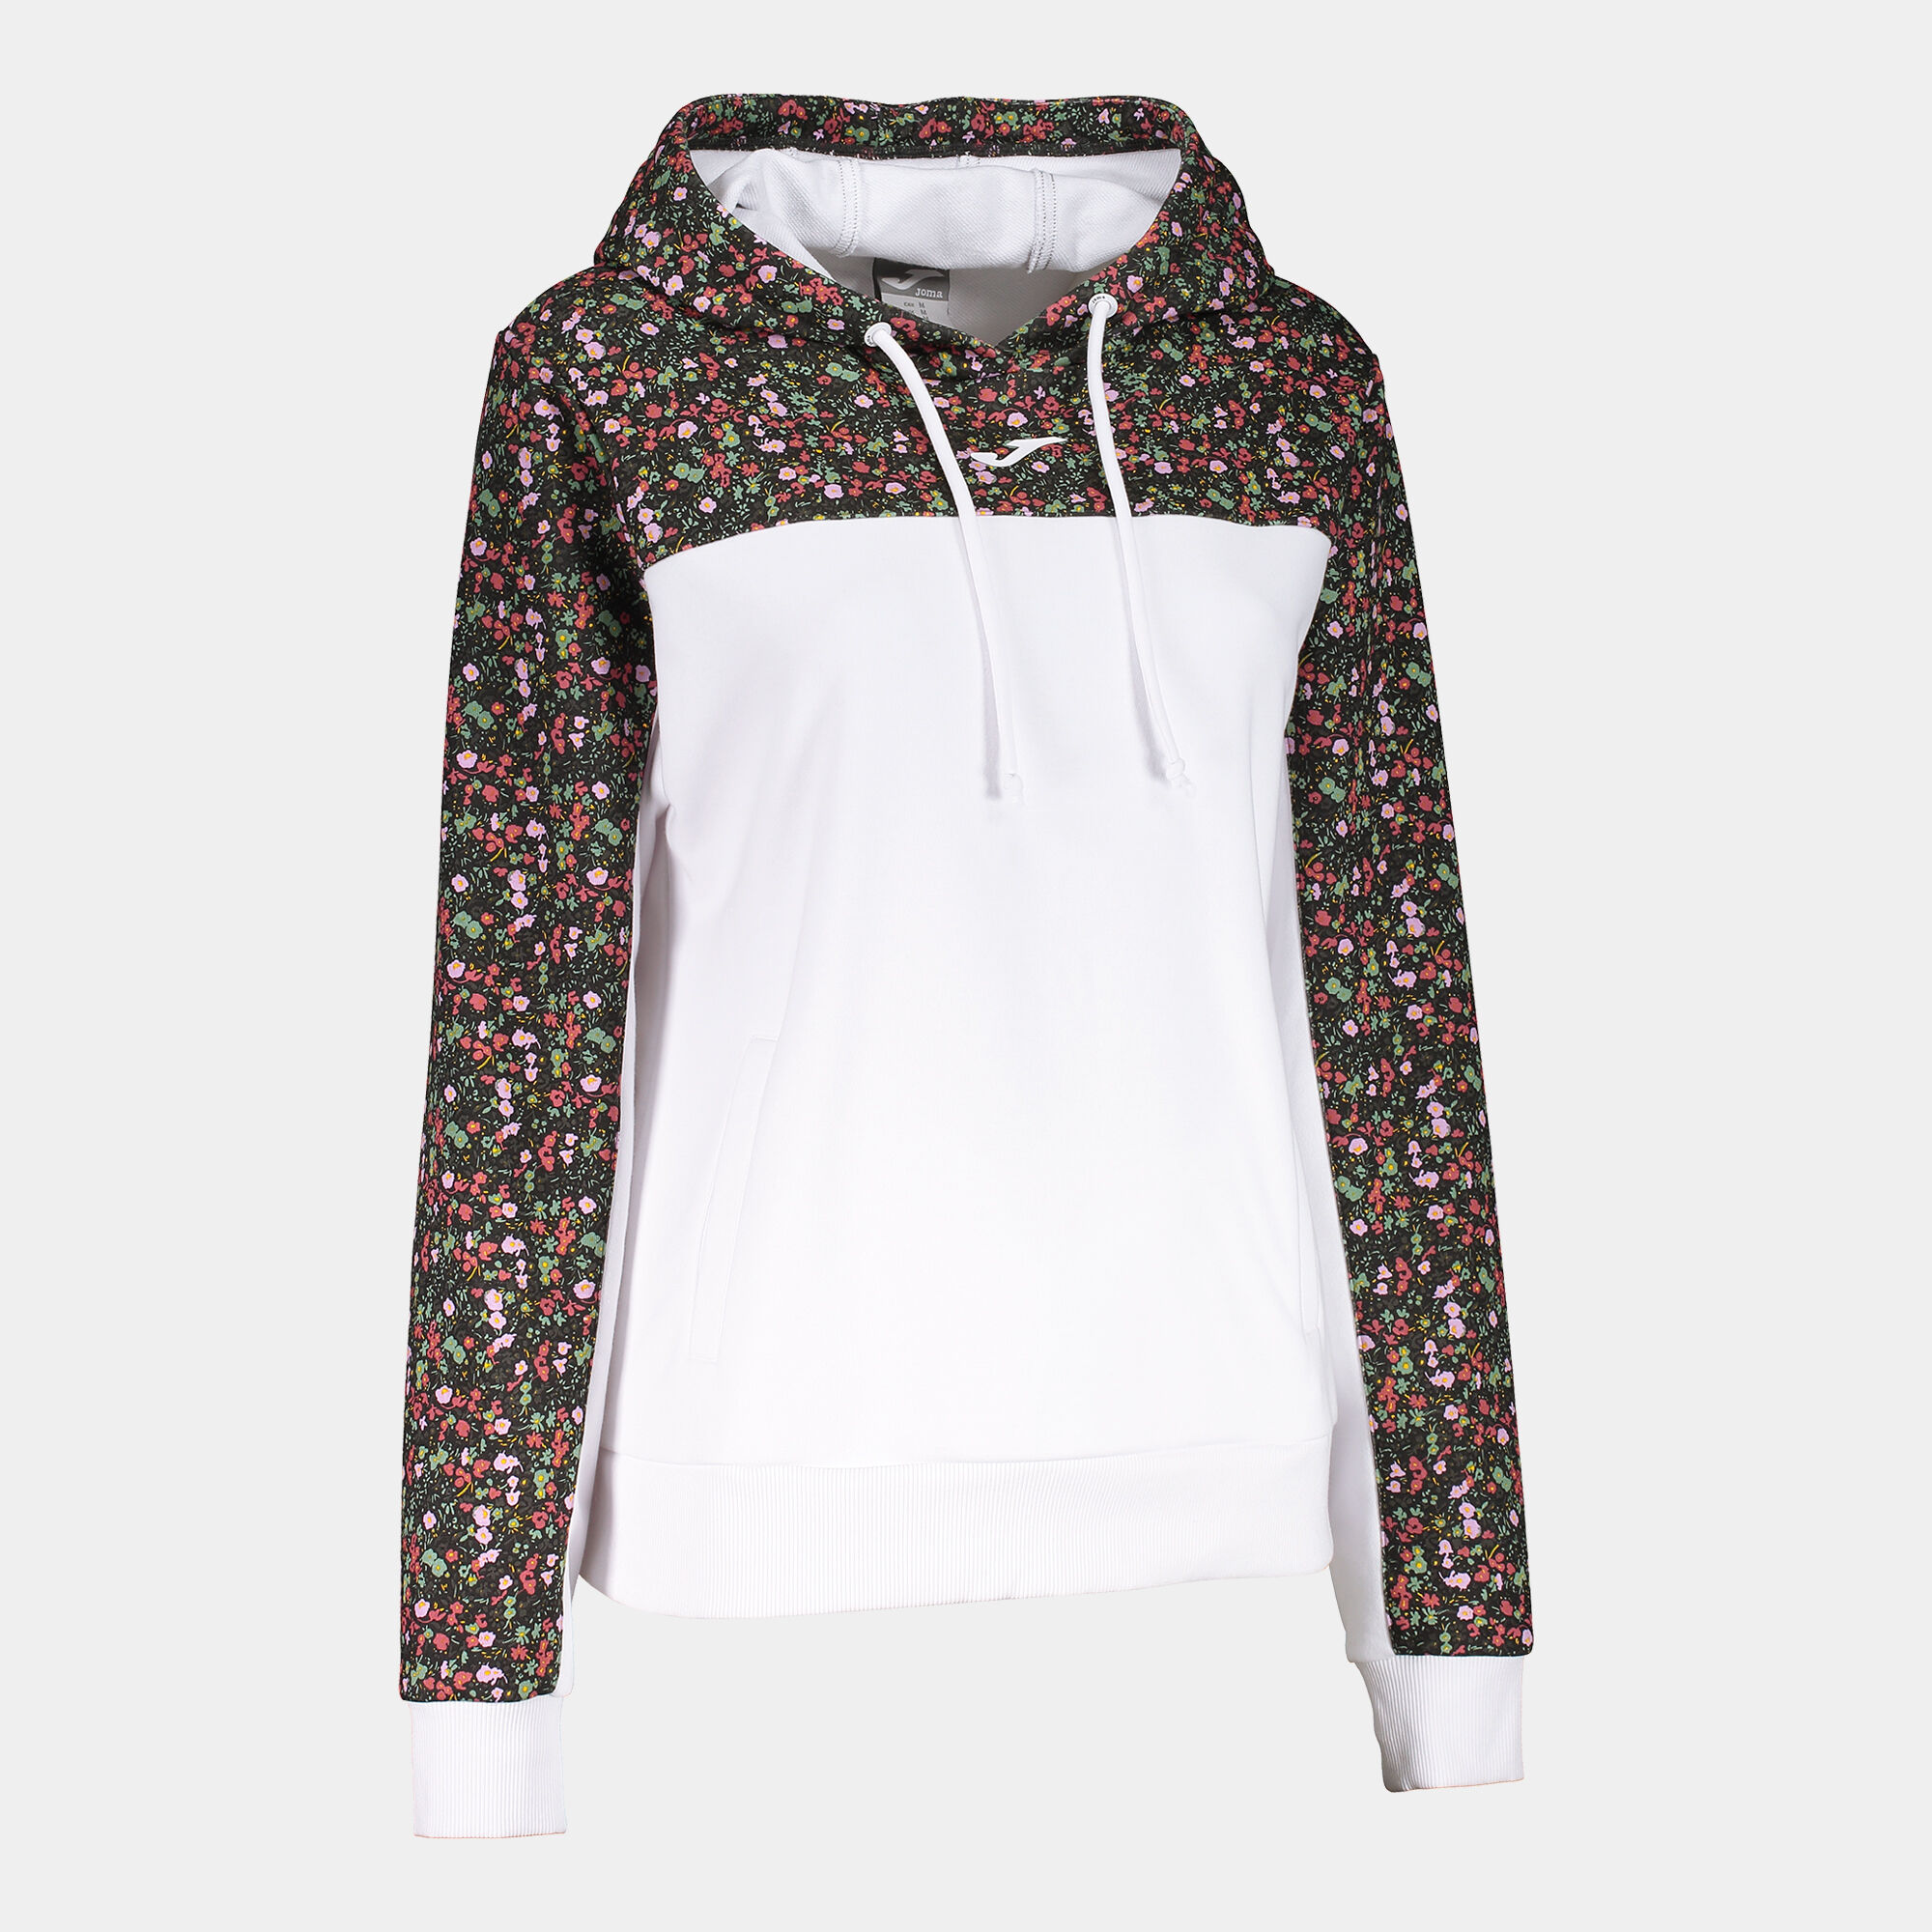 Bluza z kapturem kobiety Daphne bialy rózowy khaki